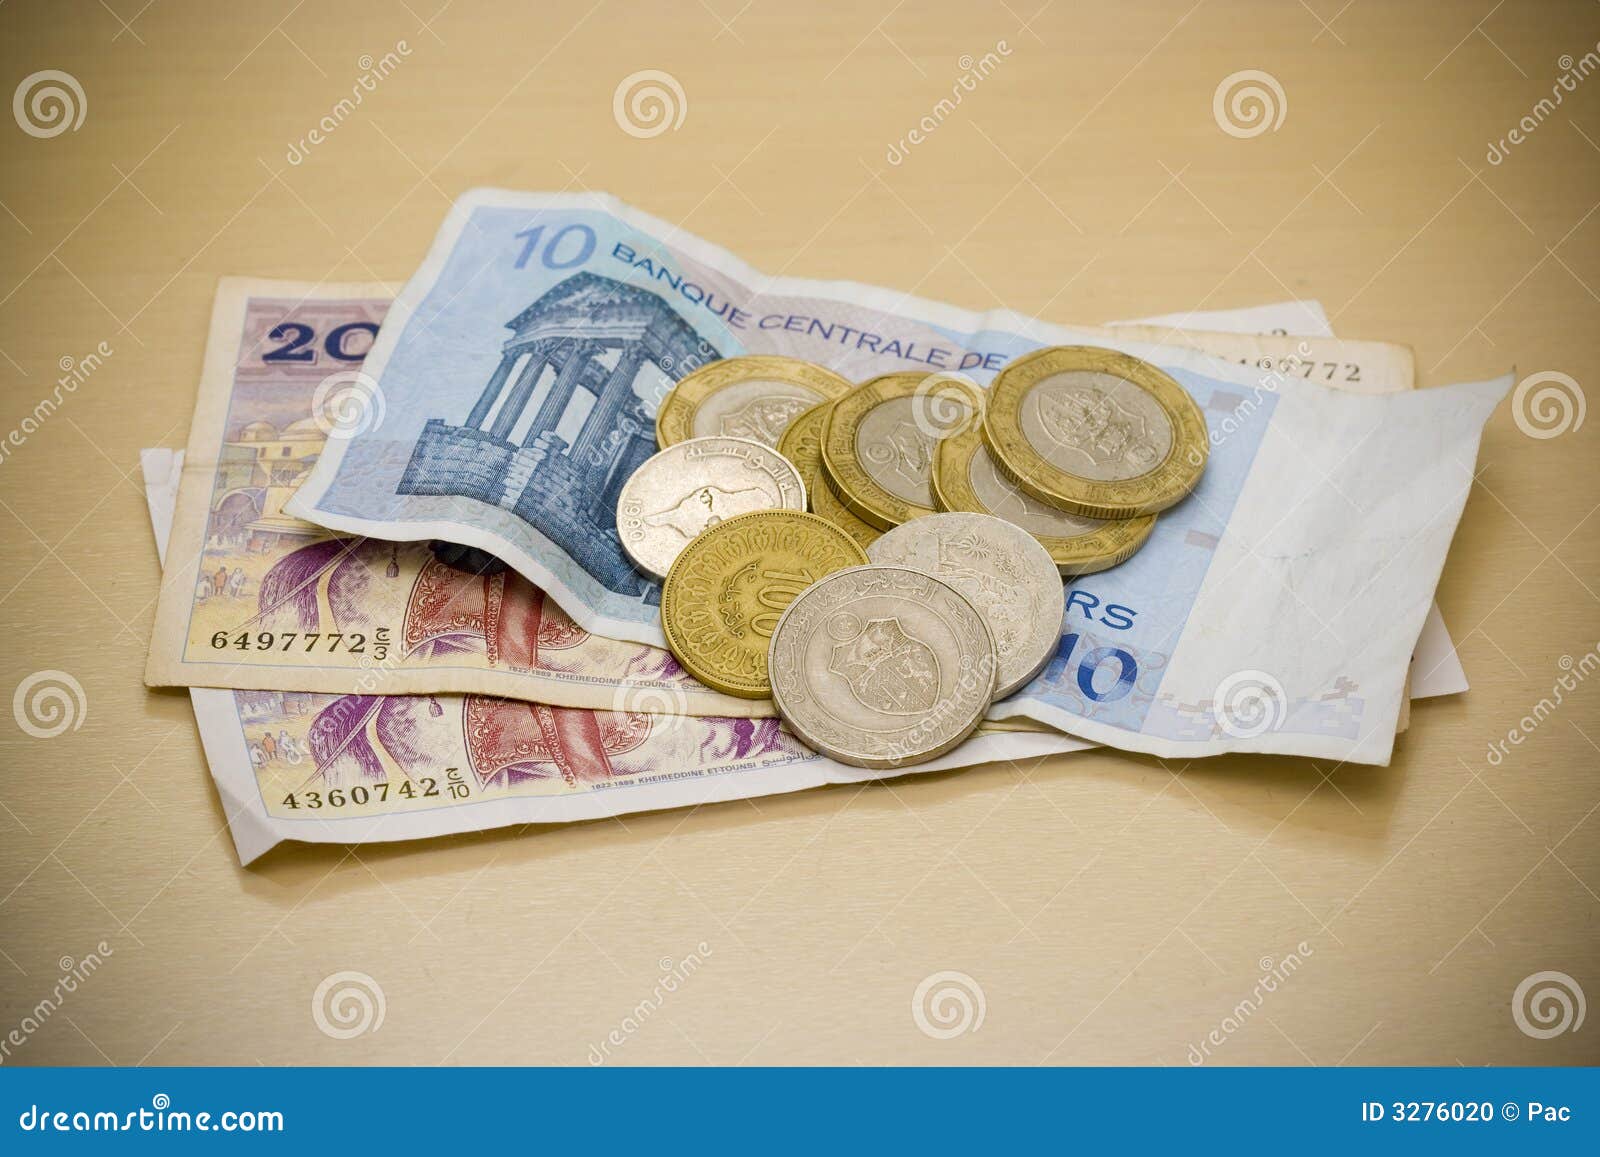 tunisian dinars